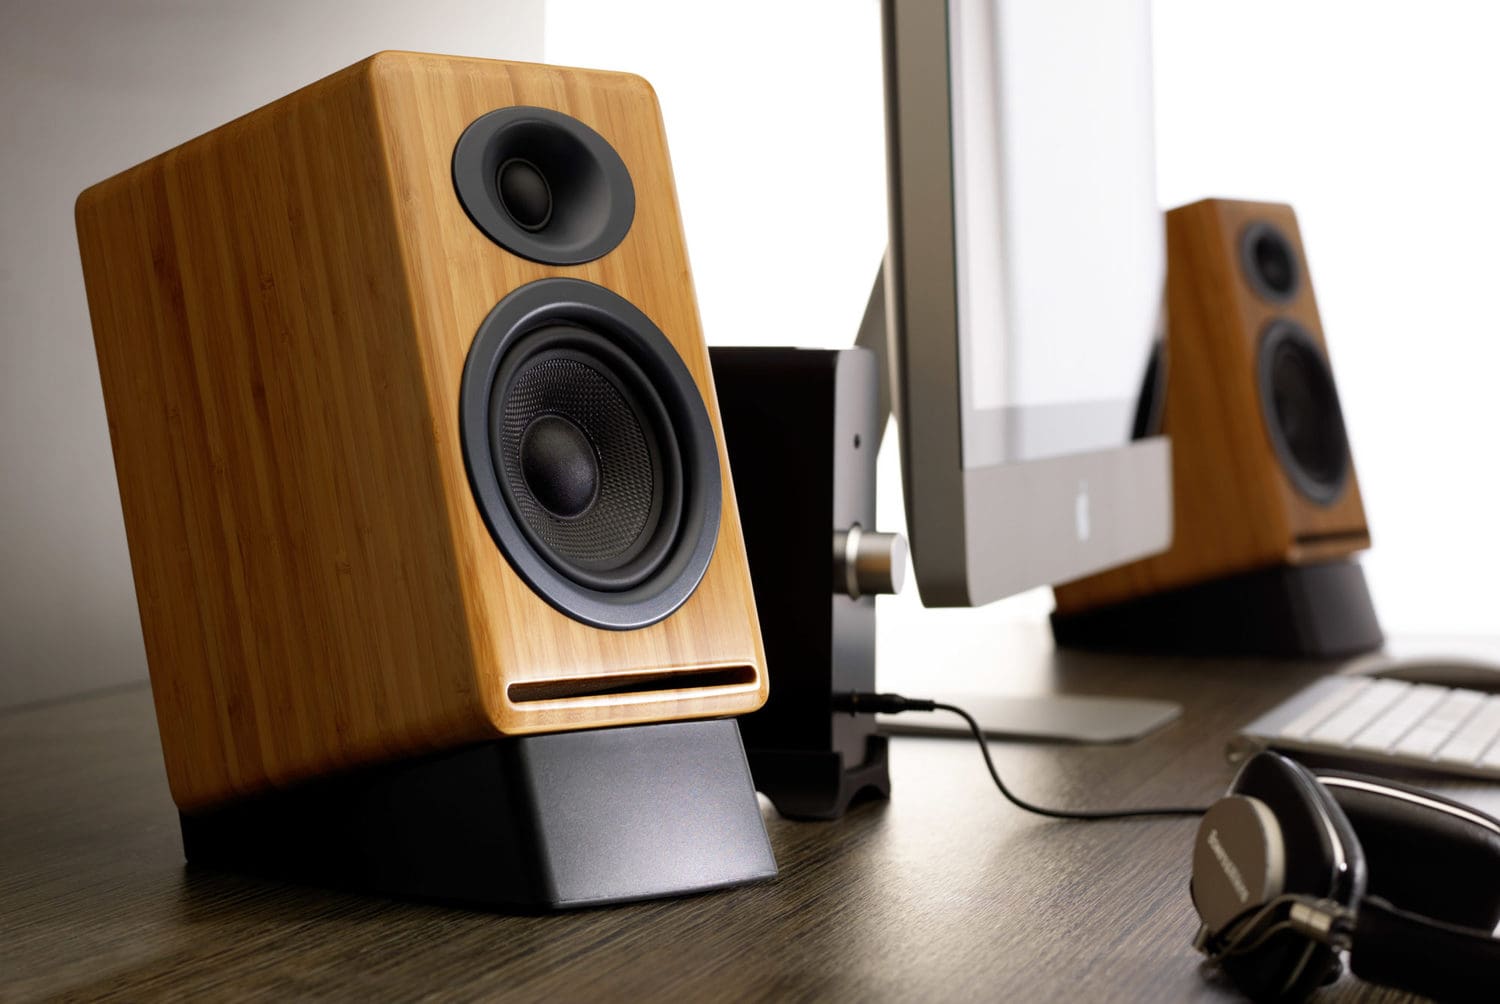 Audioengine DS2 desktop speaker stands